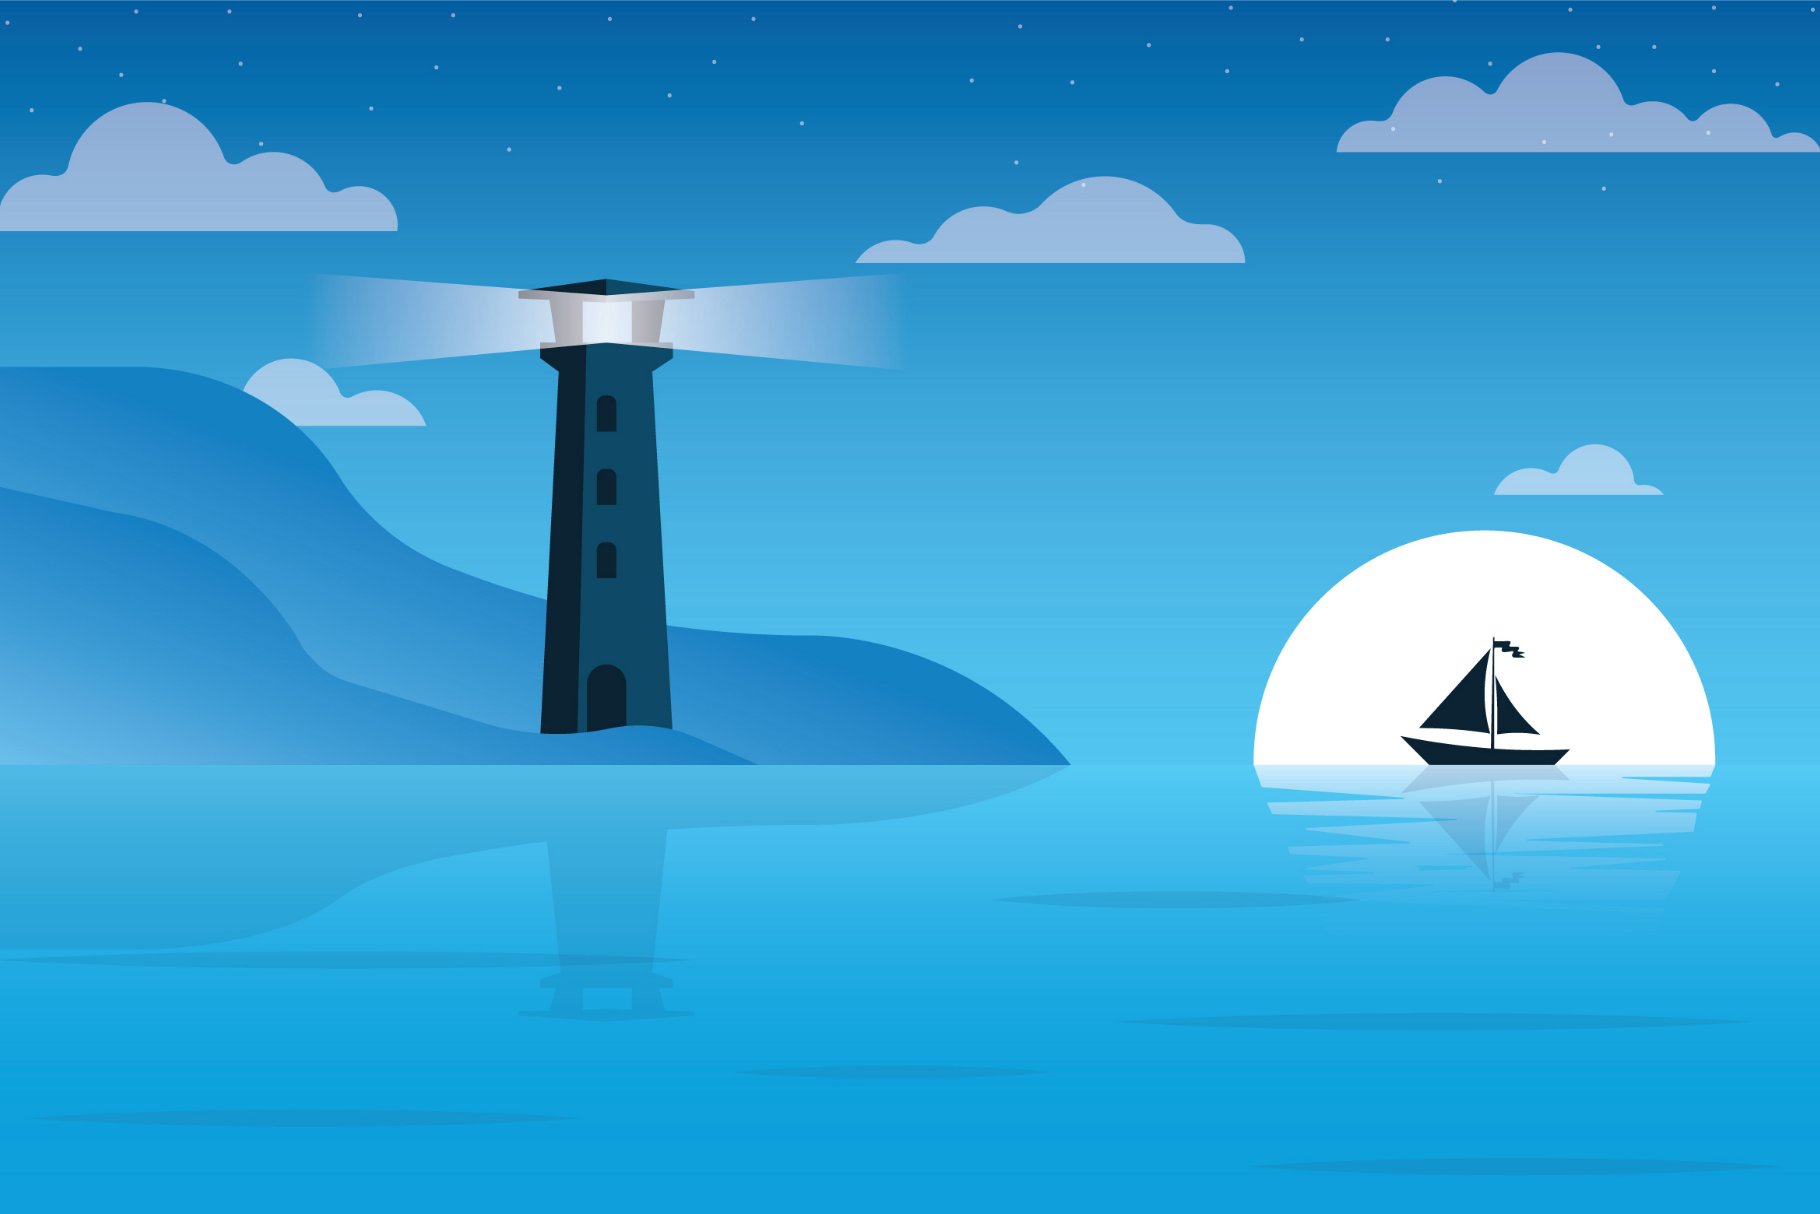 Lighthouse - Landscape Illustration cover image.